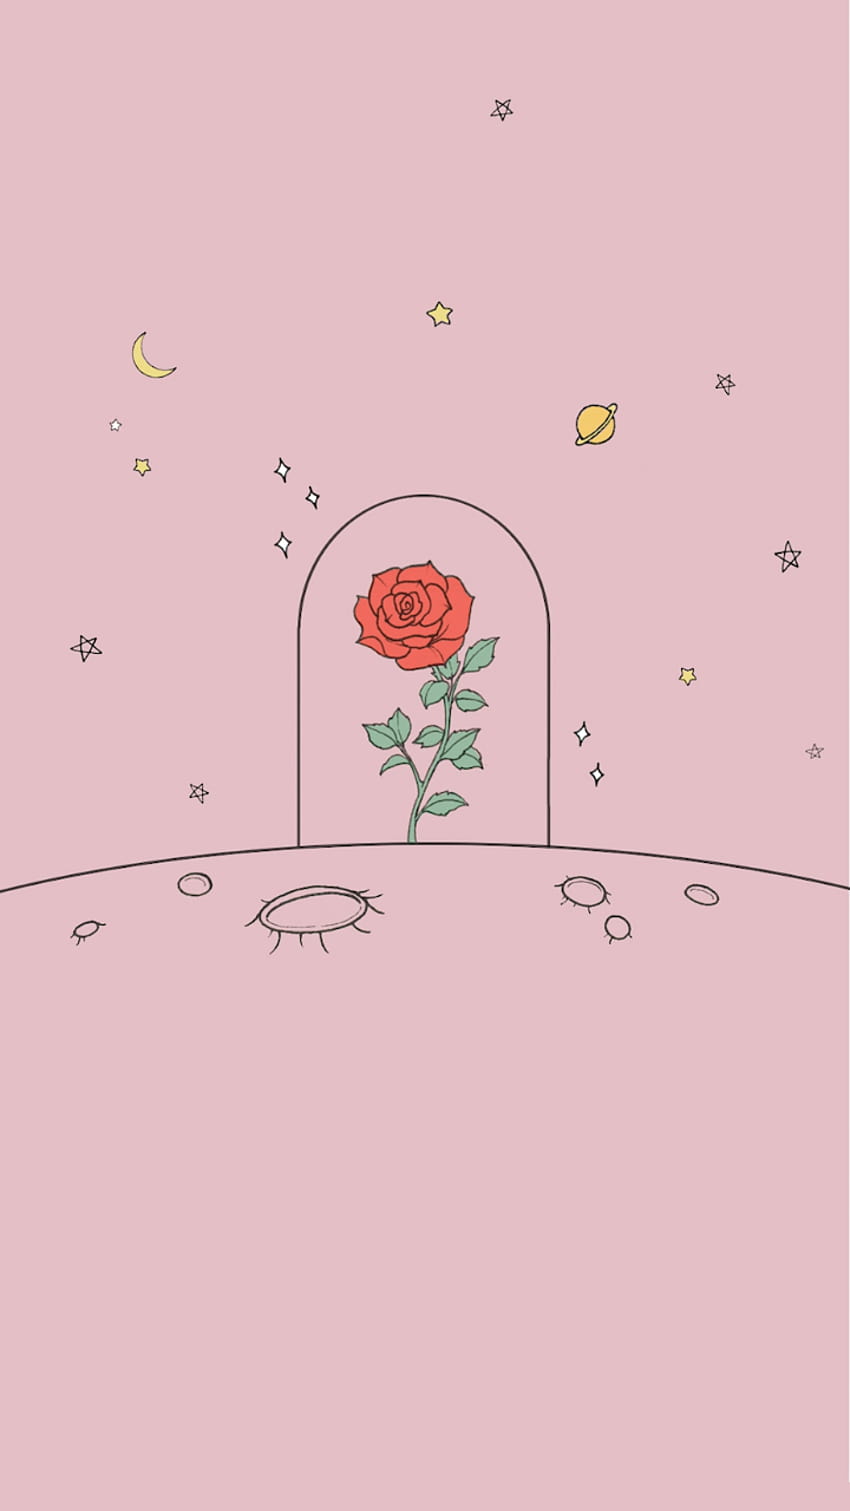 kesukaan, mawar, dan pangeran kecil, bunga minimalis wallpaper ponsel HD